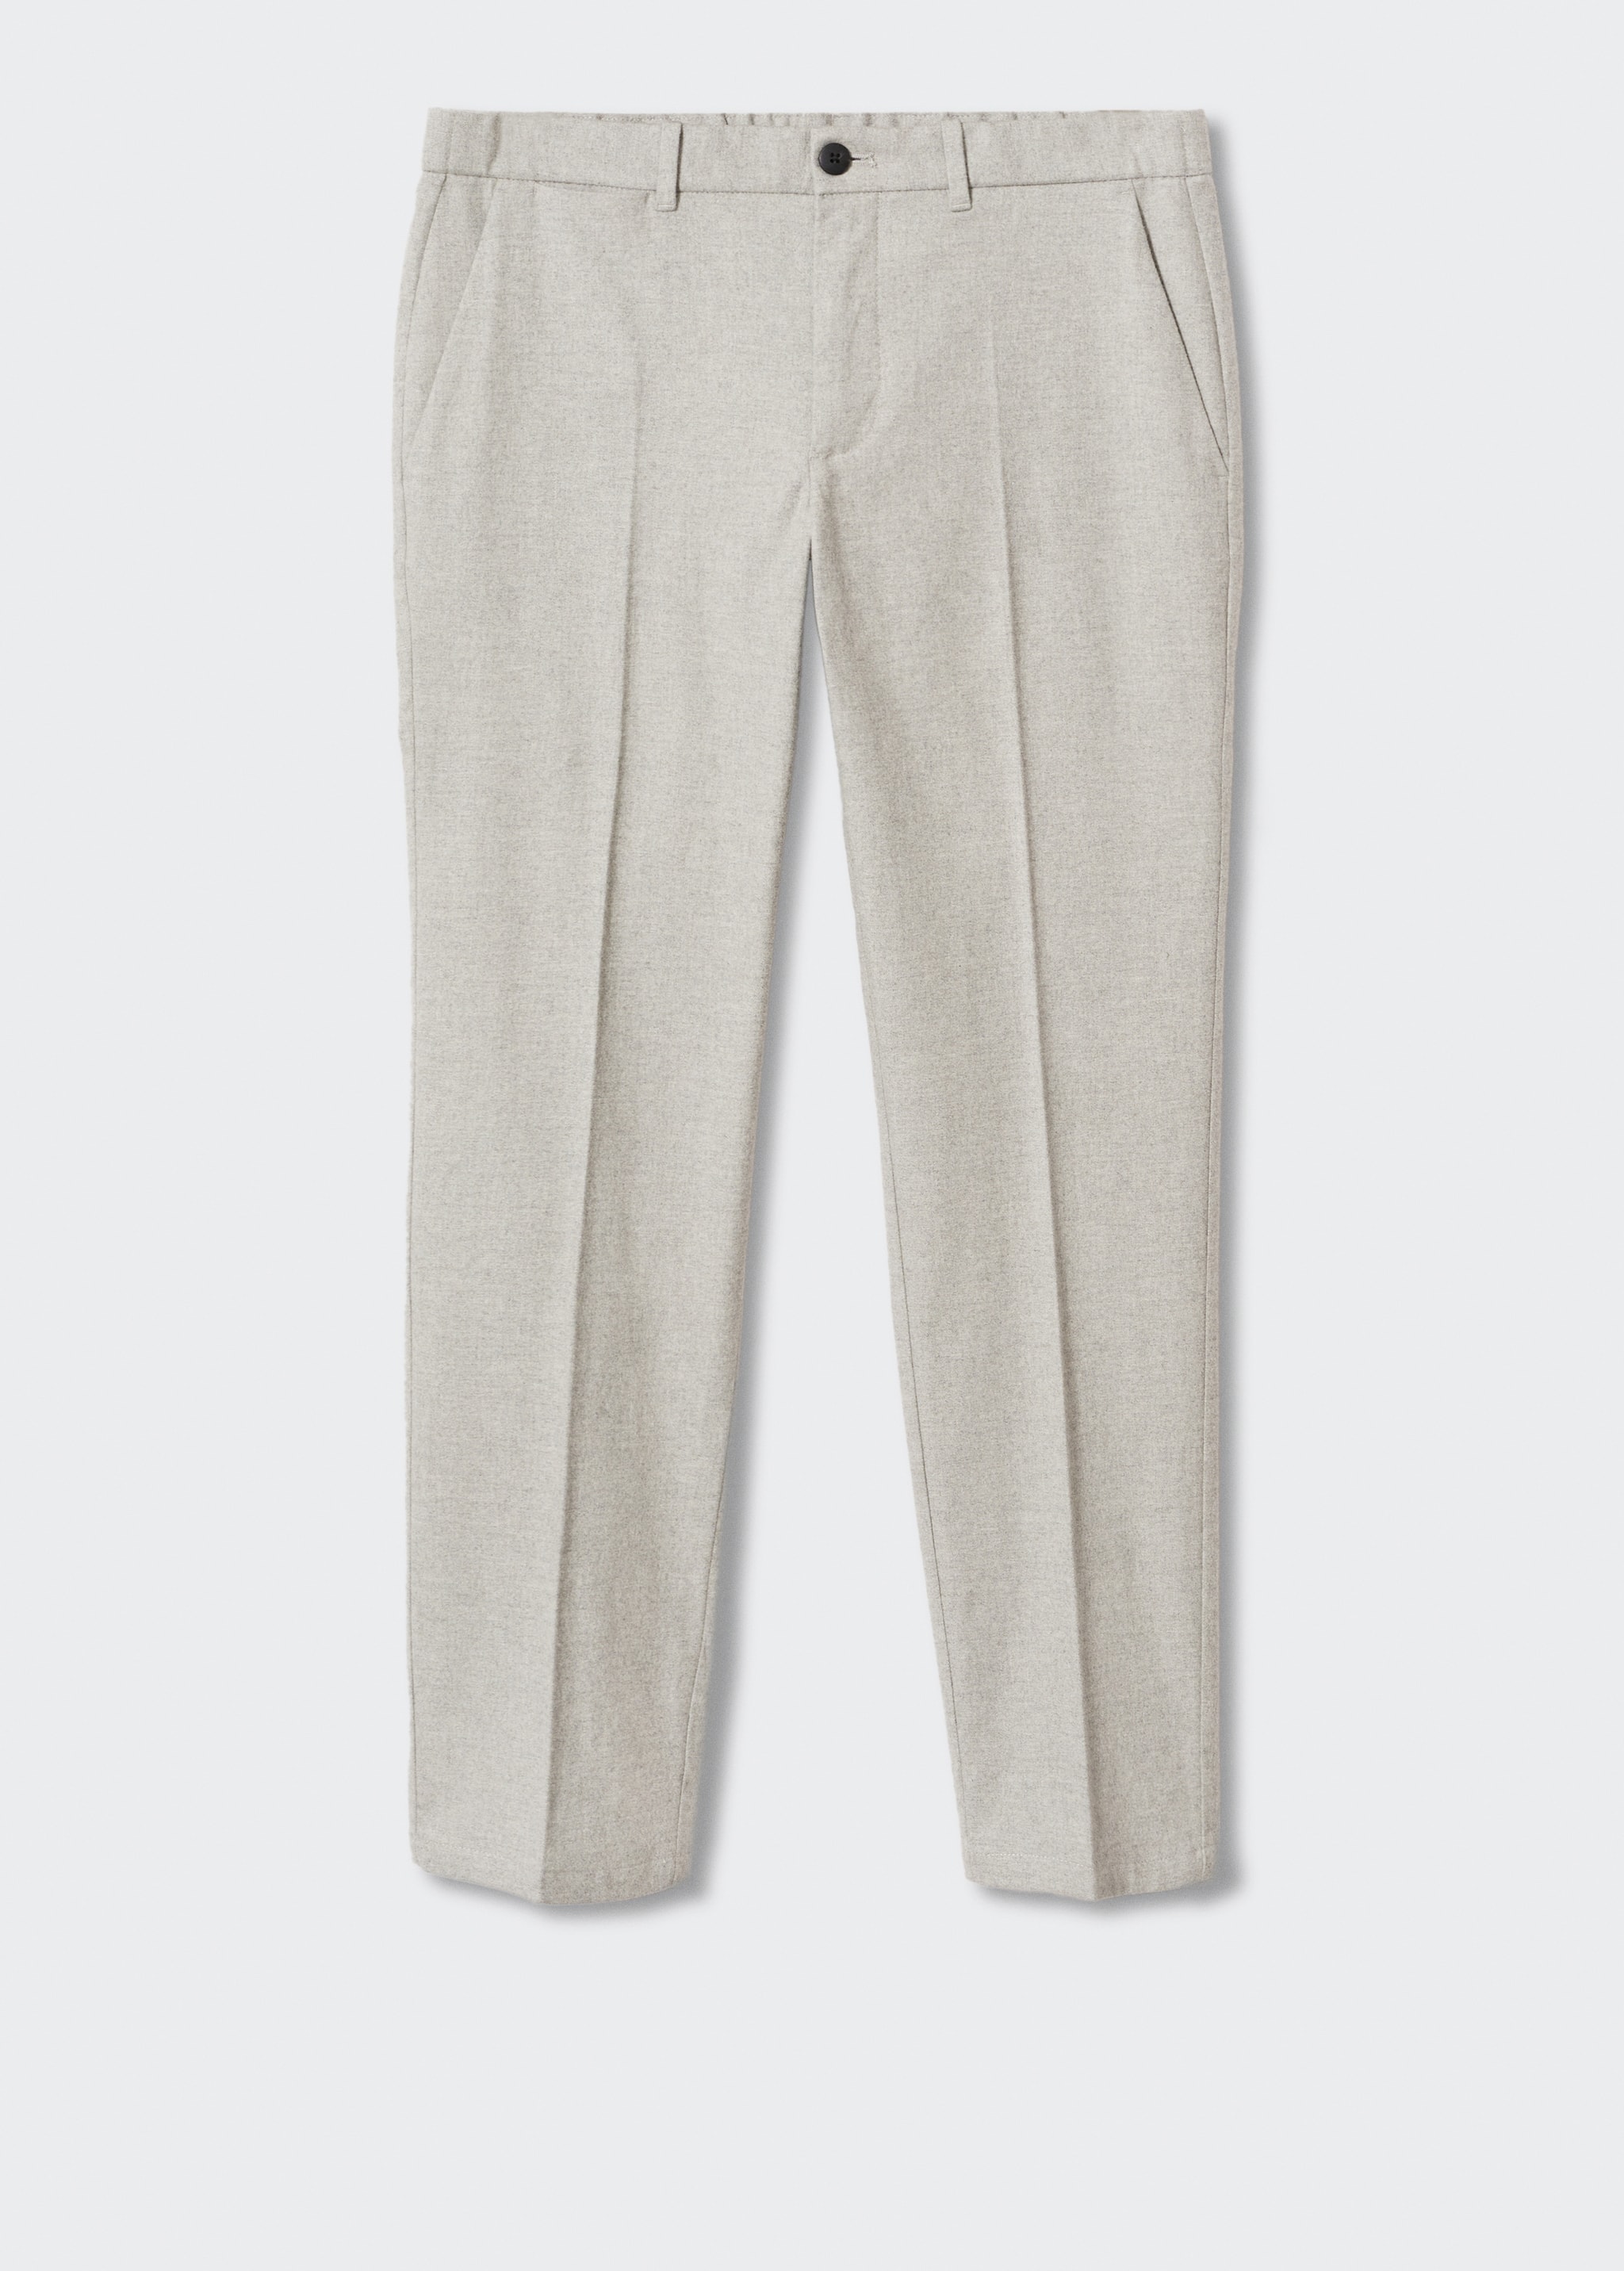 Pantalón slim fit algodón - Artículo sin modelo